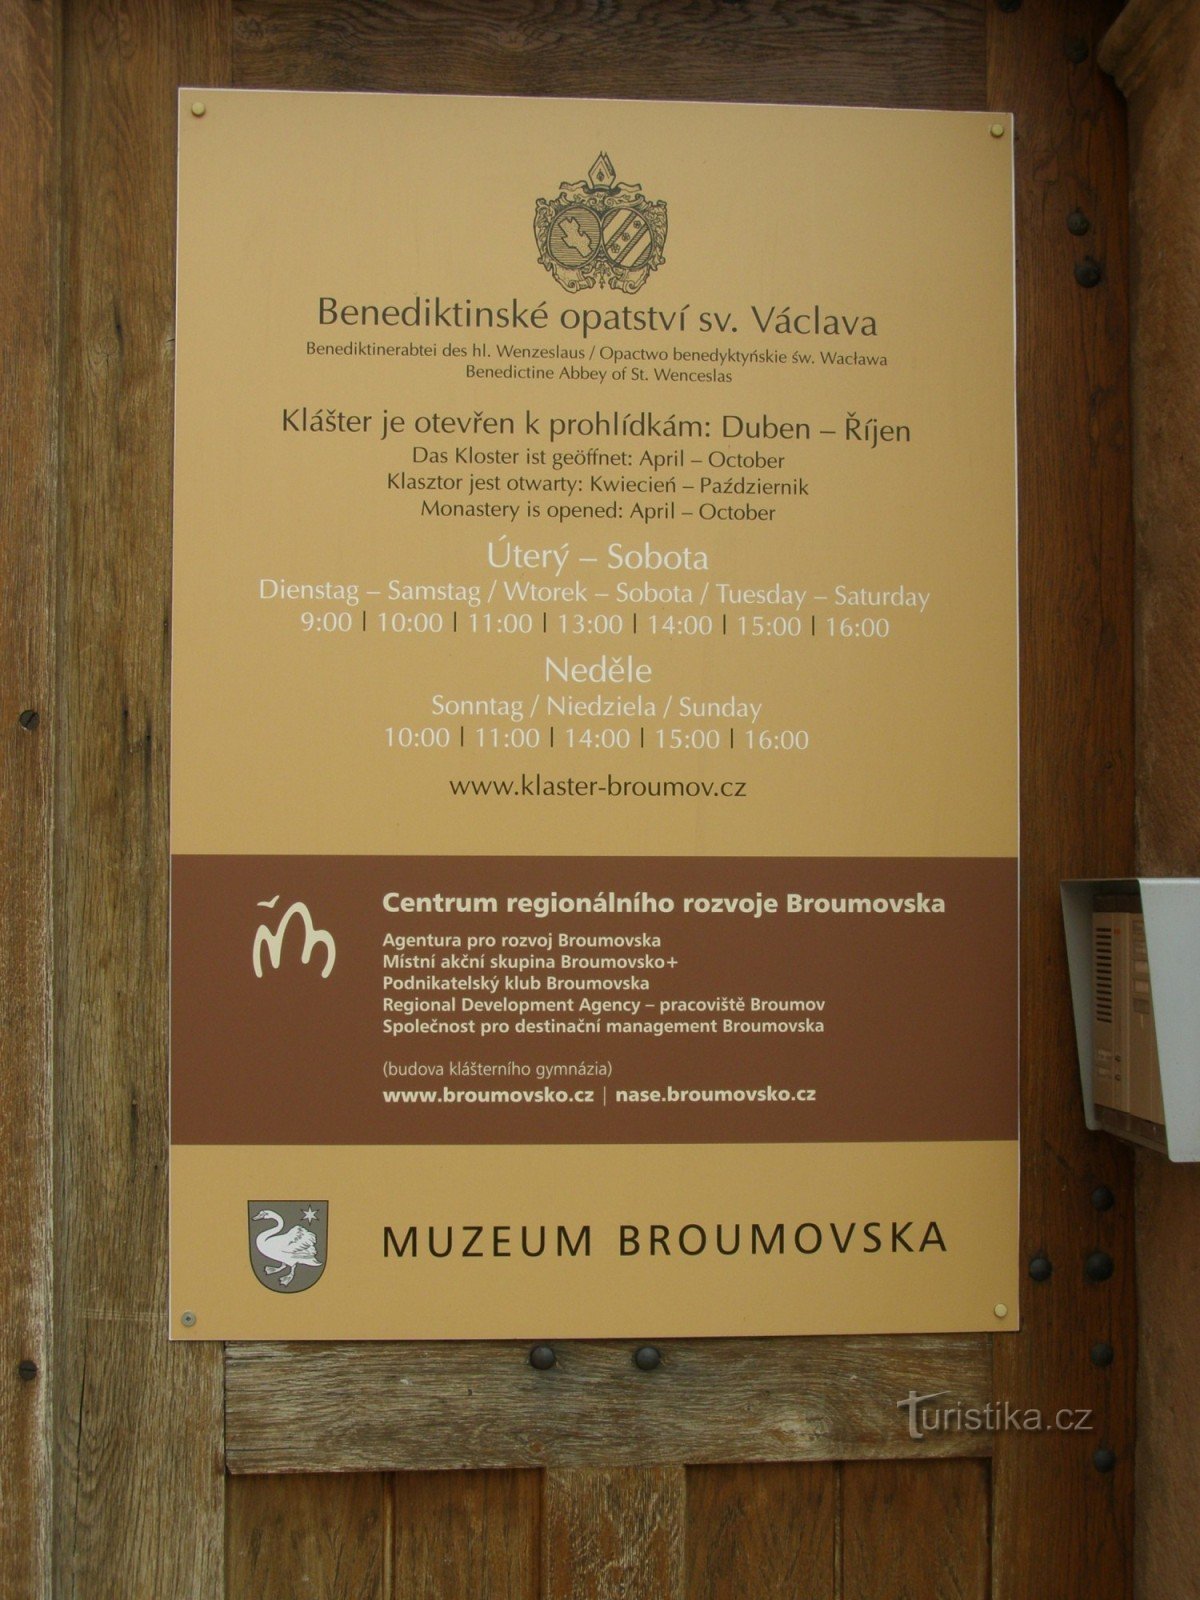 ブロモフ - ブロモフスコ博物館